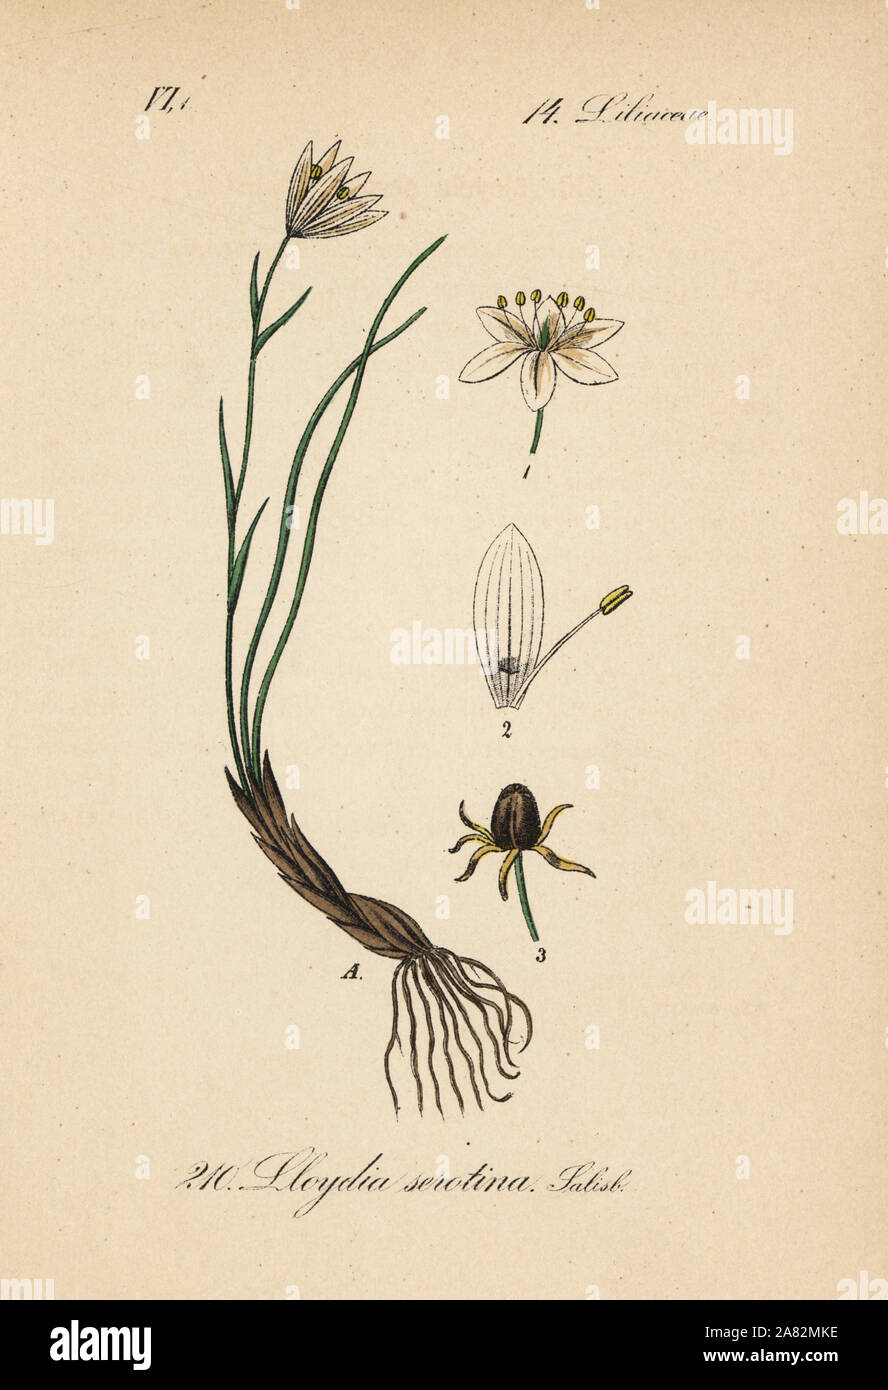 Snowdon lily, Gagea serotina (Lloydia serotina). Handcoloured lithograph from Diederich von Schlechtendal's German Flora (Flora von Deutschland), Jena, 1871. Stock Photo